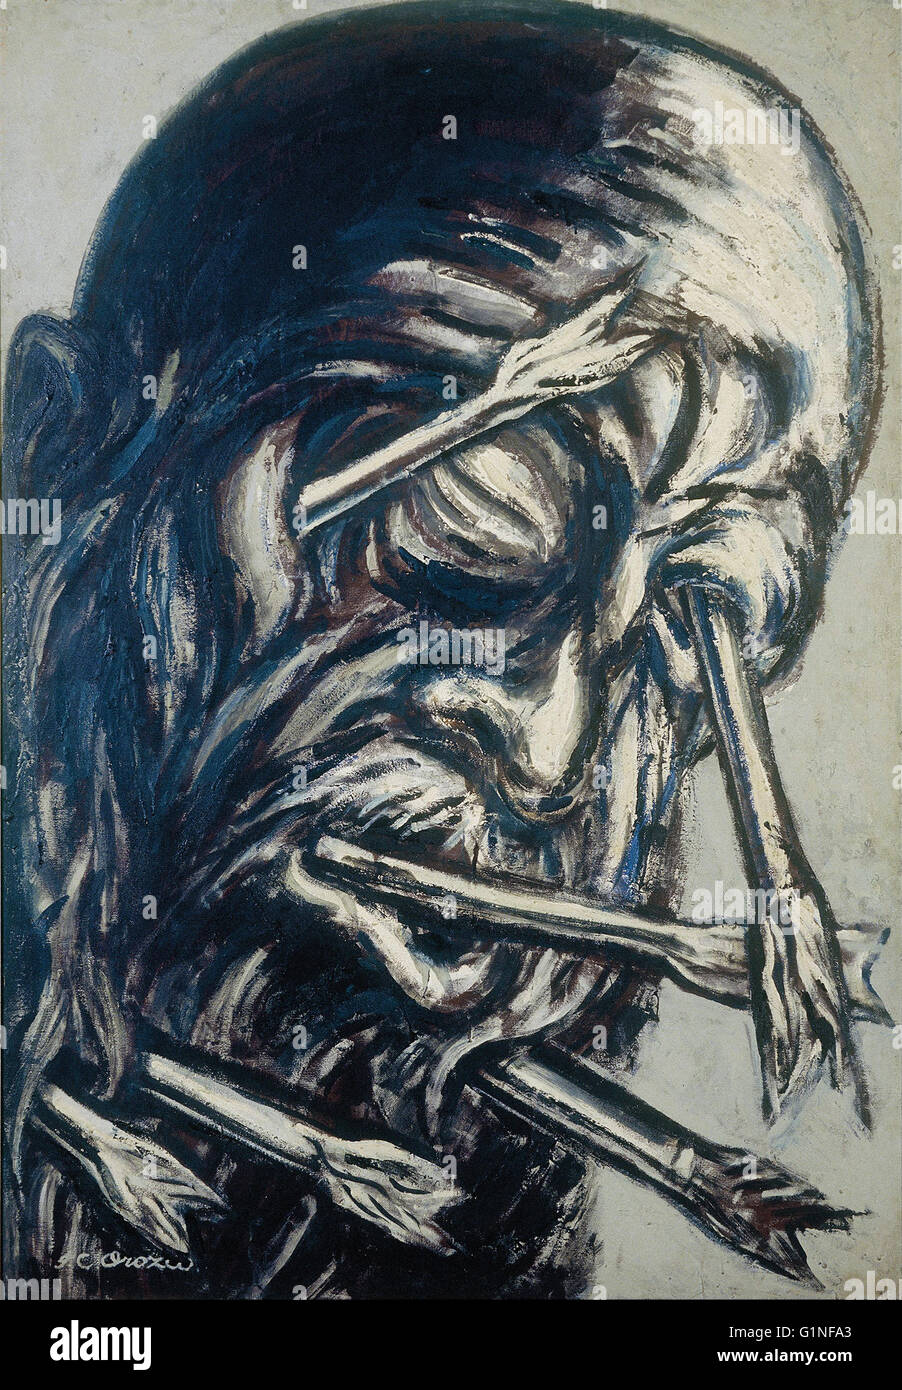 José Clemente Orozco - Siège percé de flèches, de la série Los teules - Museo Nacional de Arte de Mexico Banque D'Images